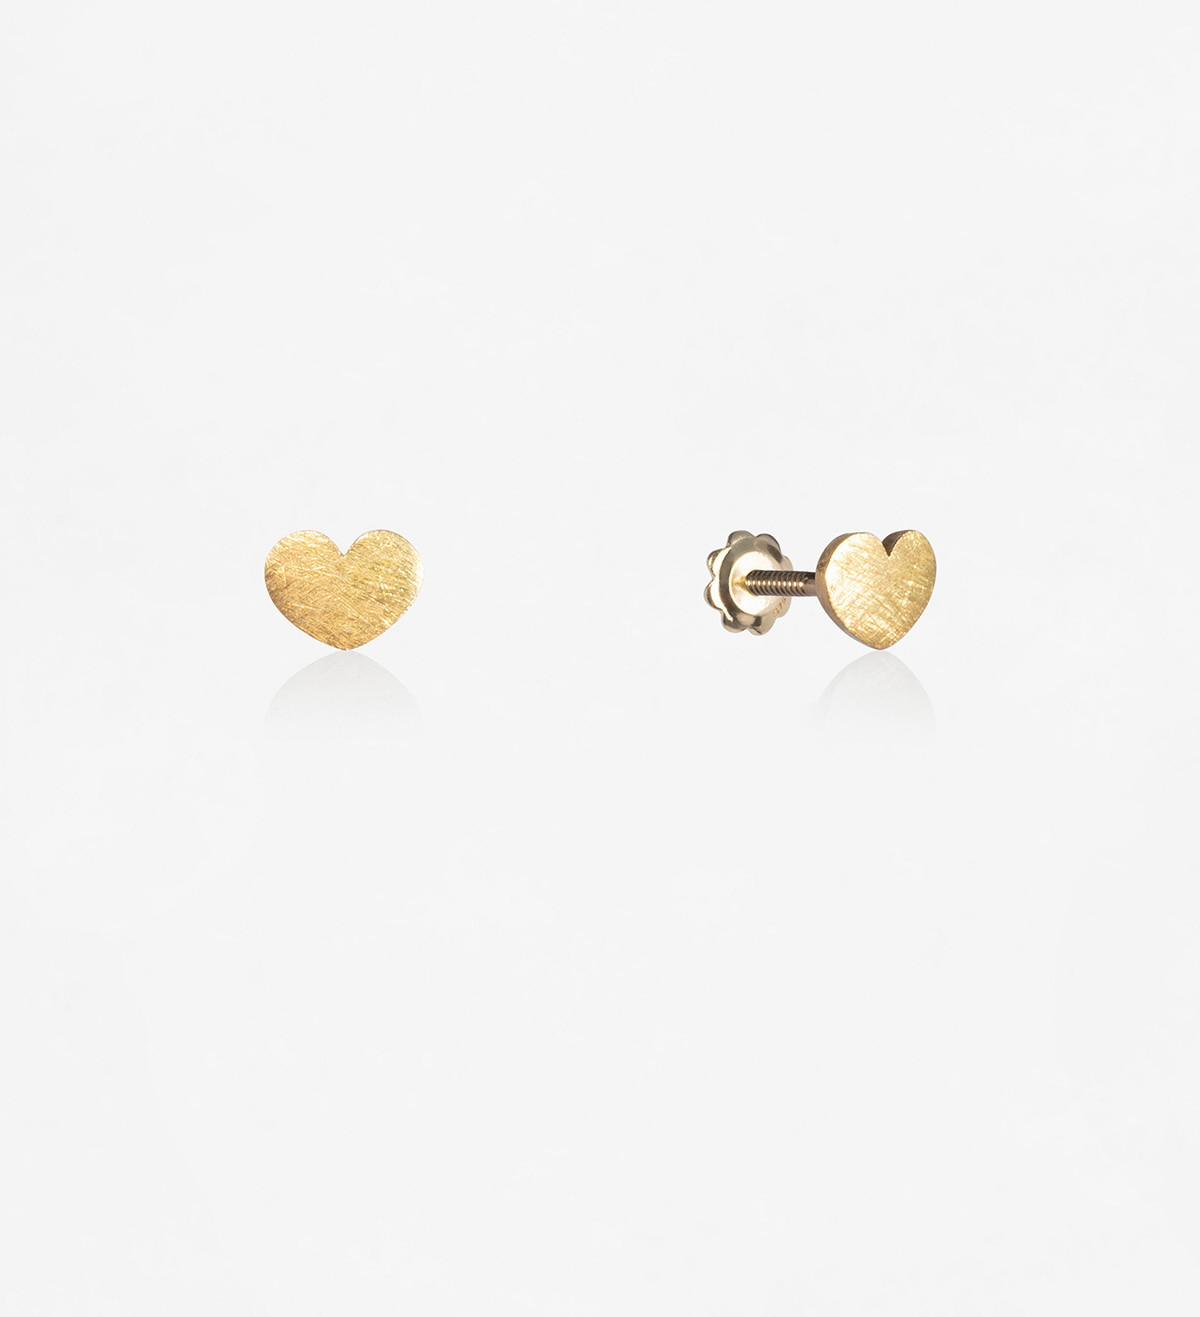 18k gold earrings Símbol heart 5mm